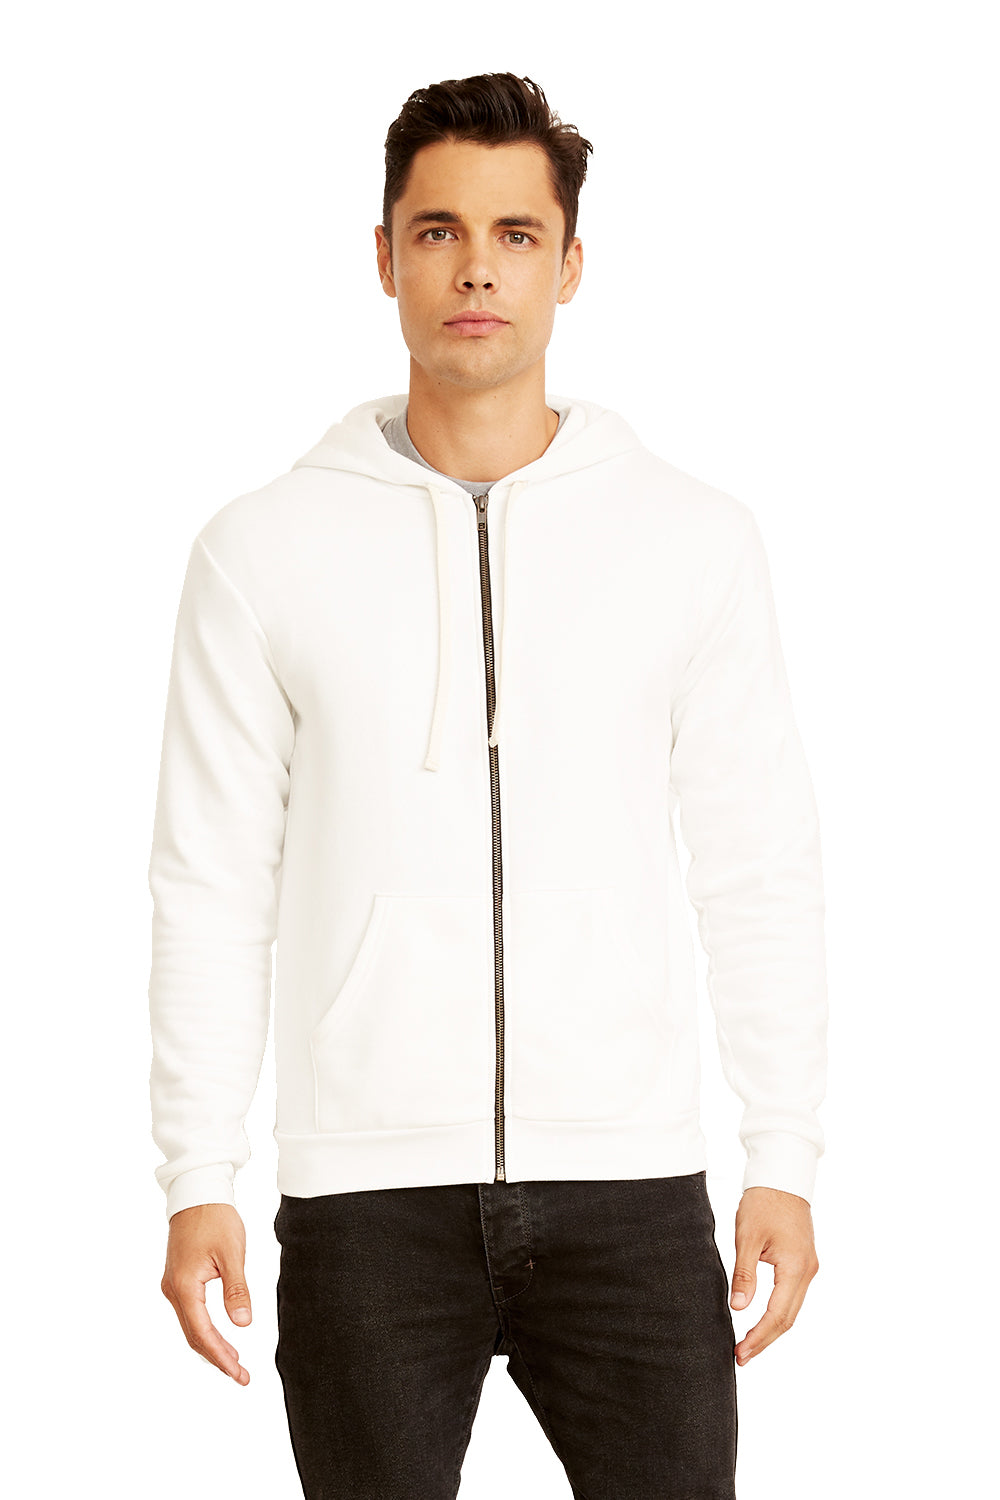 Next Level 9602 Mens Fleece Full Zip Hooded Sweatshirt Hoodie White Front